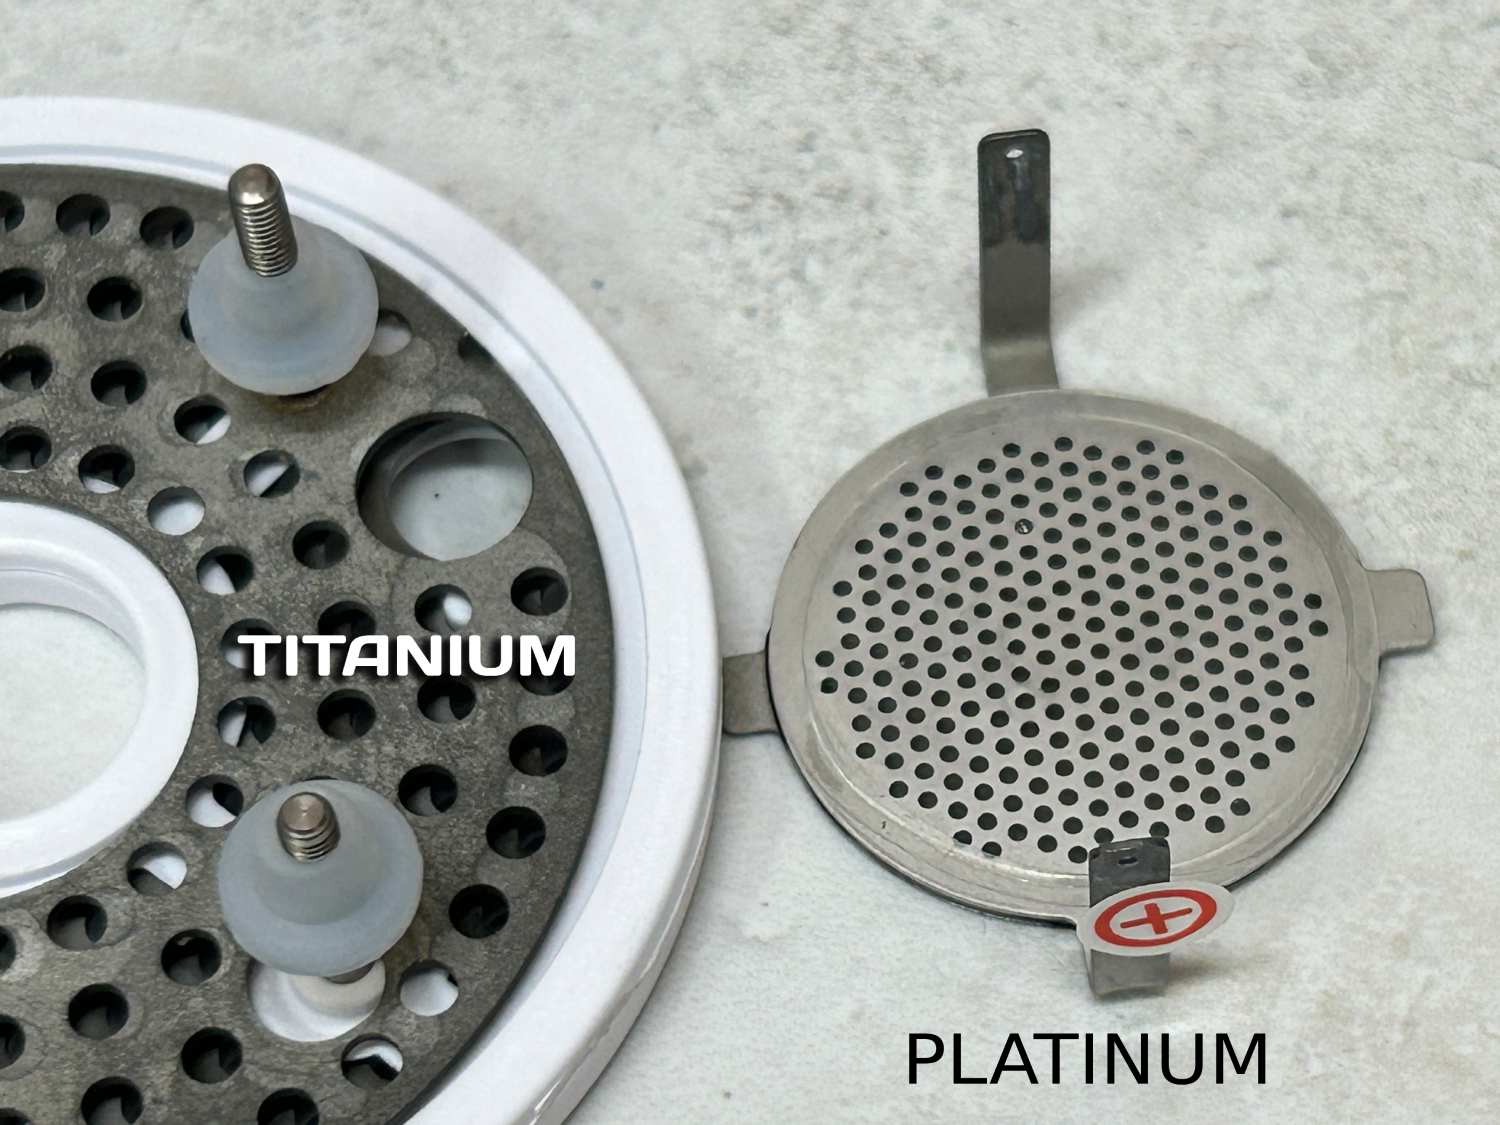 titanium vs platinum electtrodes